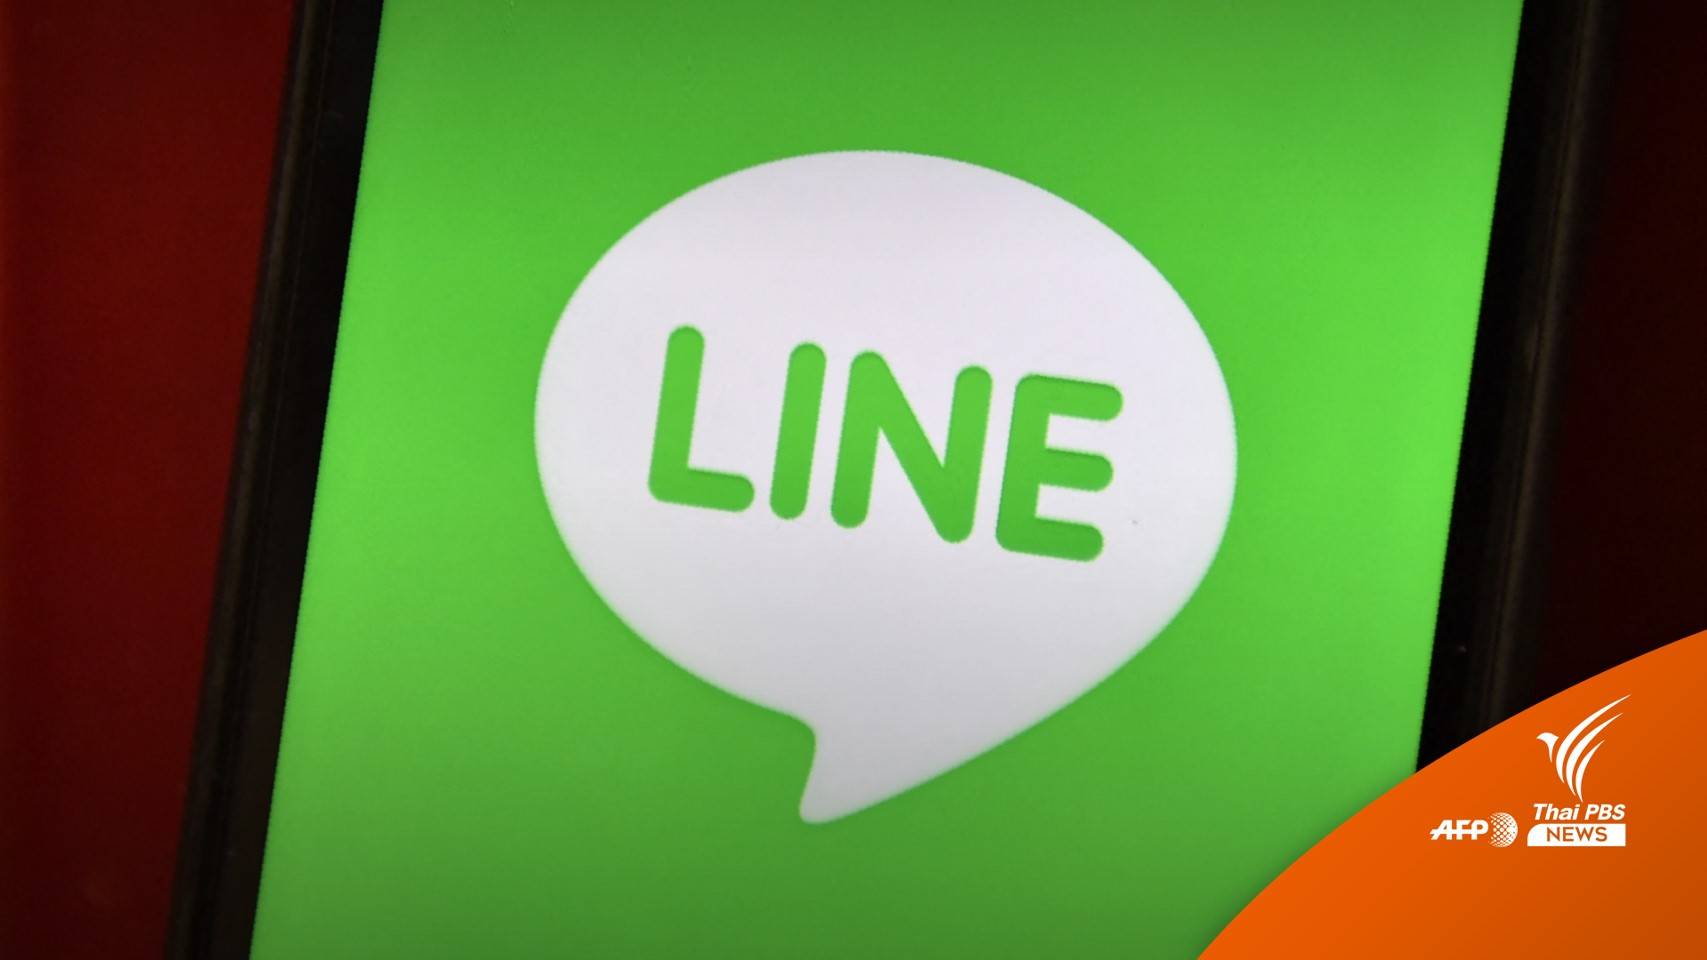 ข้อมูลลูกค้า LINE Pay ในญี่ปุ่น-ต่างประเทศหลุด 1.3 แสนรายการ